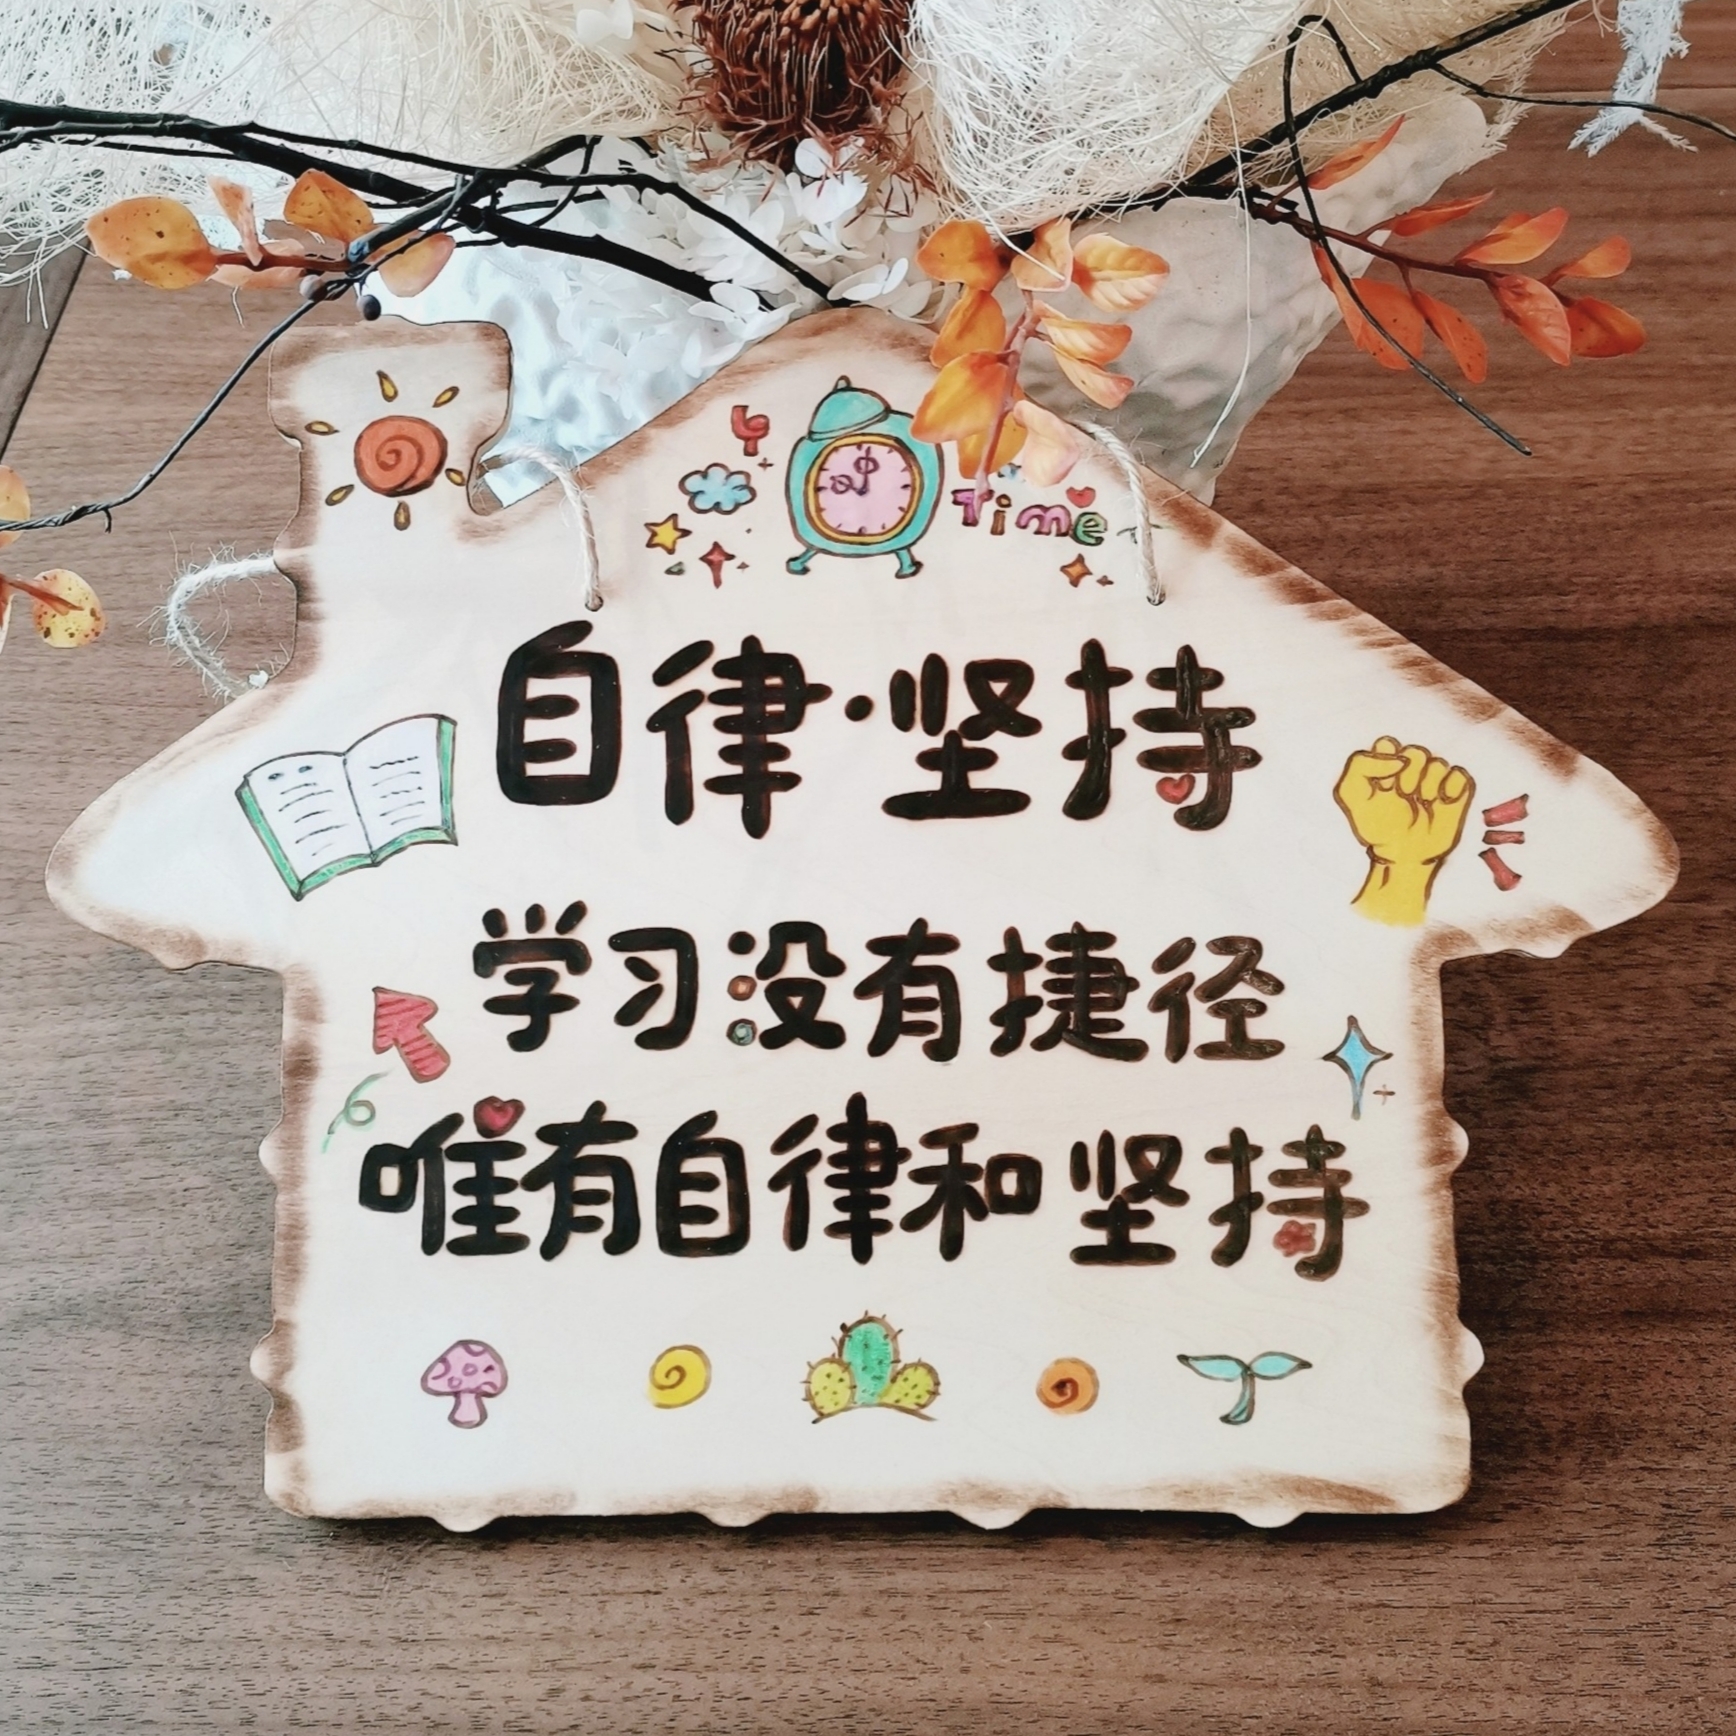 创意公主儿童房卧室房门口学生励志标语挂牌墙上装饰定制孩子礼物